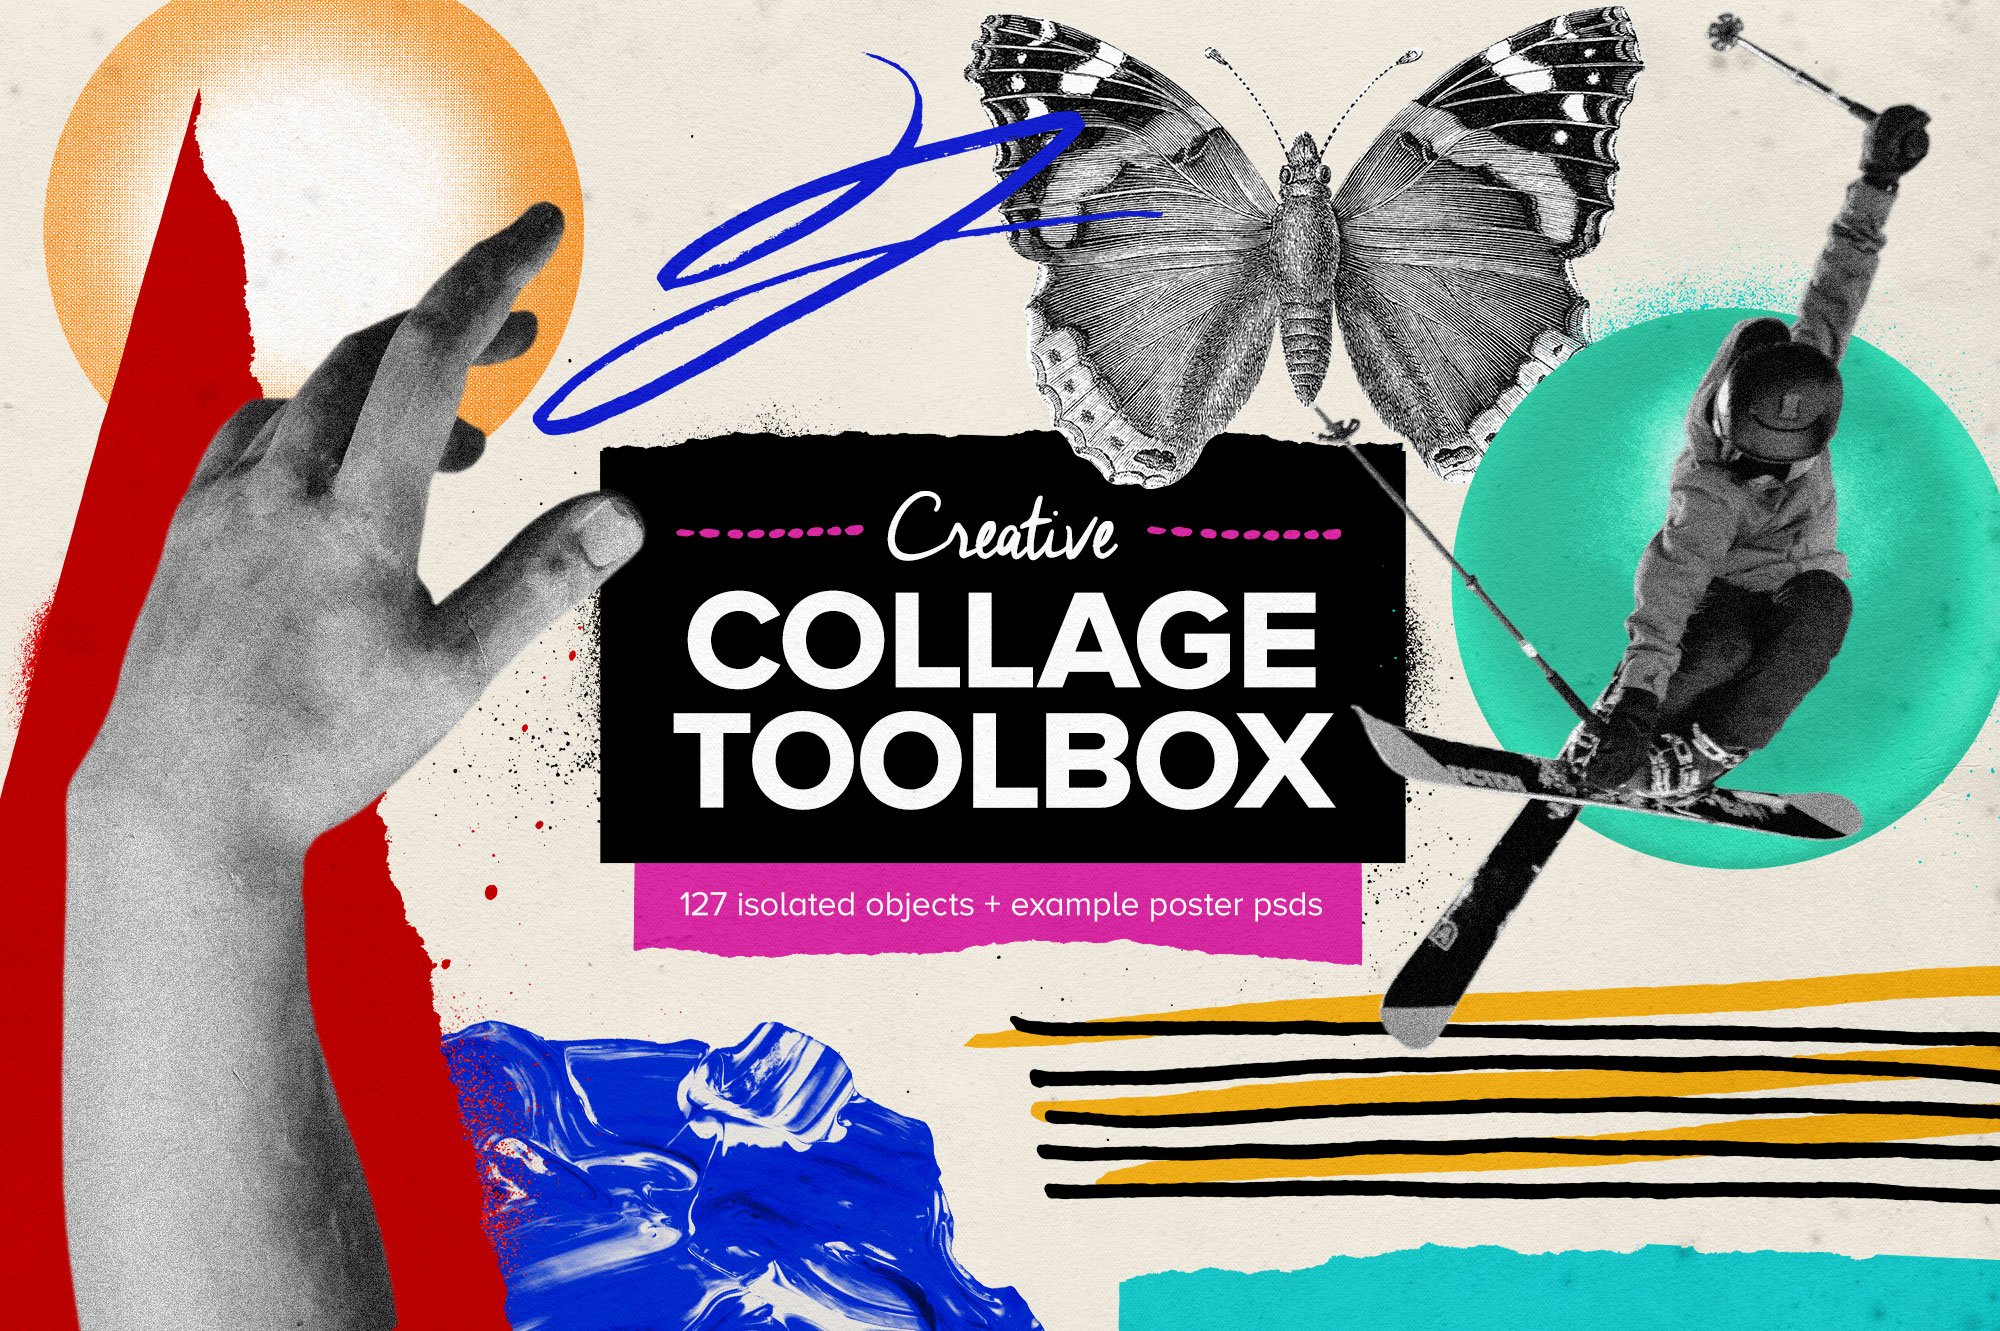 Creative Collage Toolbox 大量创意拼贴元素和物体喷漆形状绘画纸张纹理 图片素材 第1张